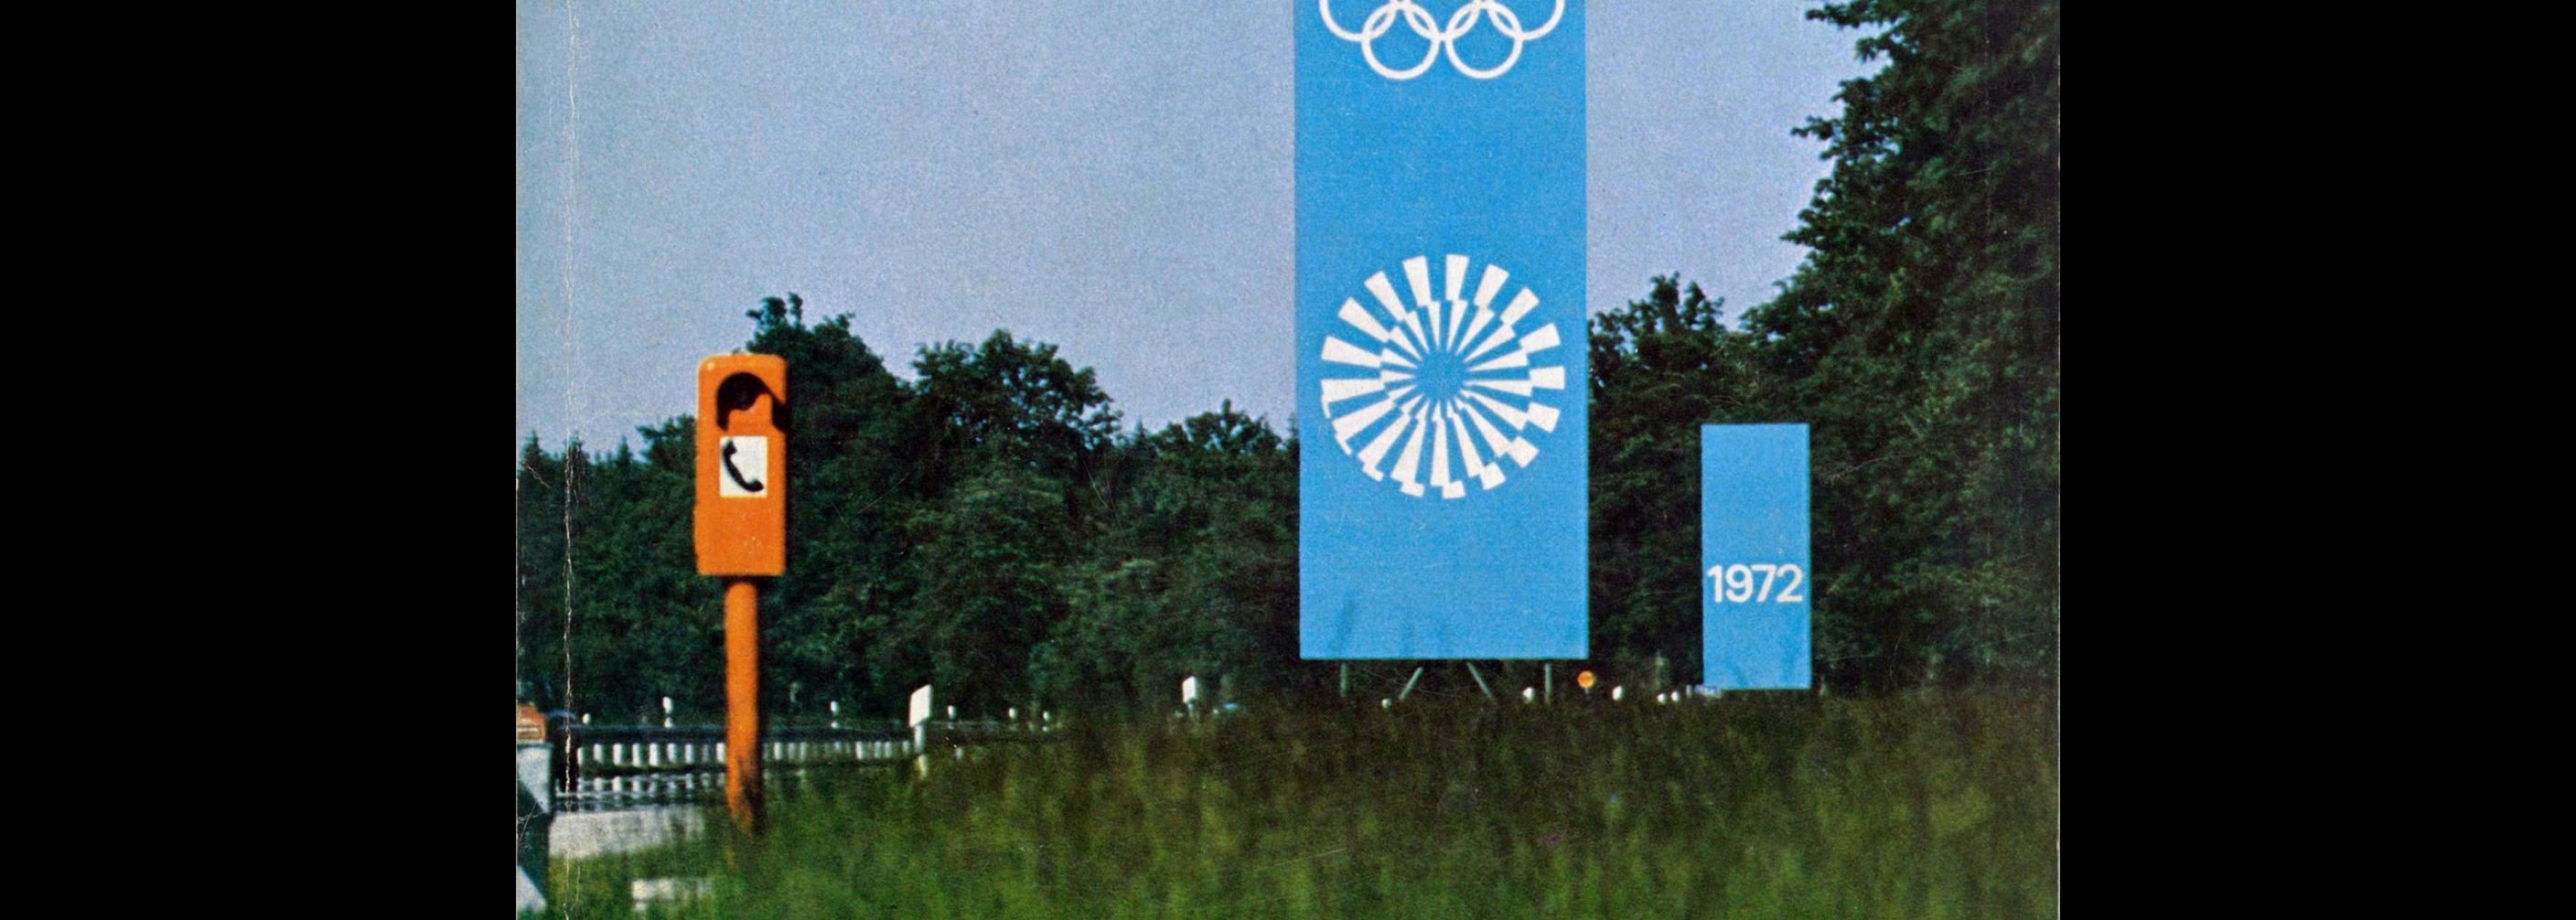 Novum Gebrauchsgraphik, 7, 1972. Olympics Special - Otl Aicher